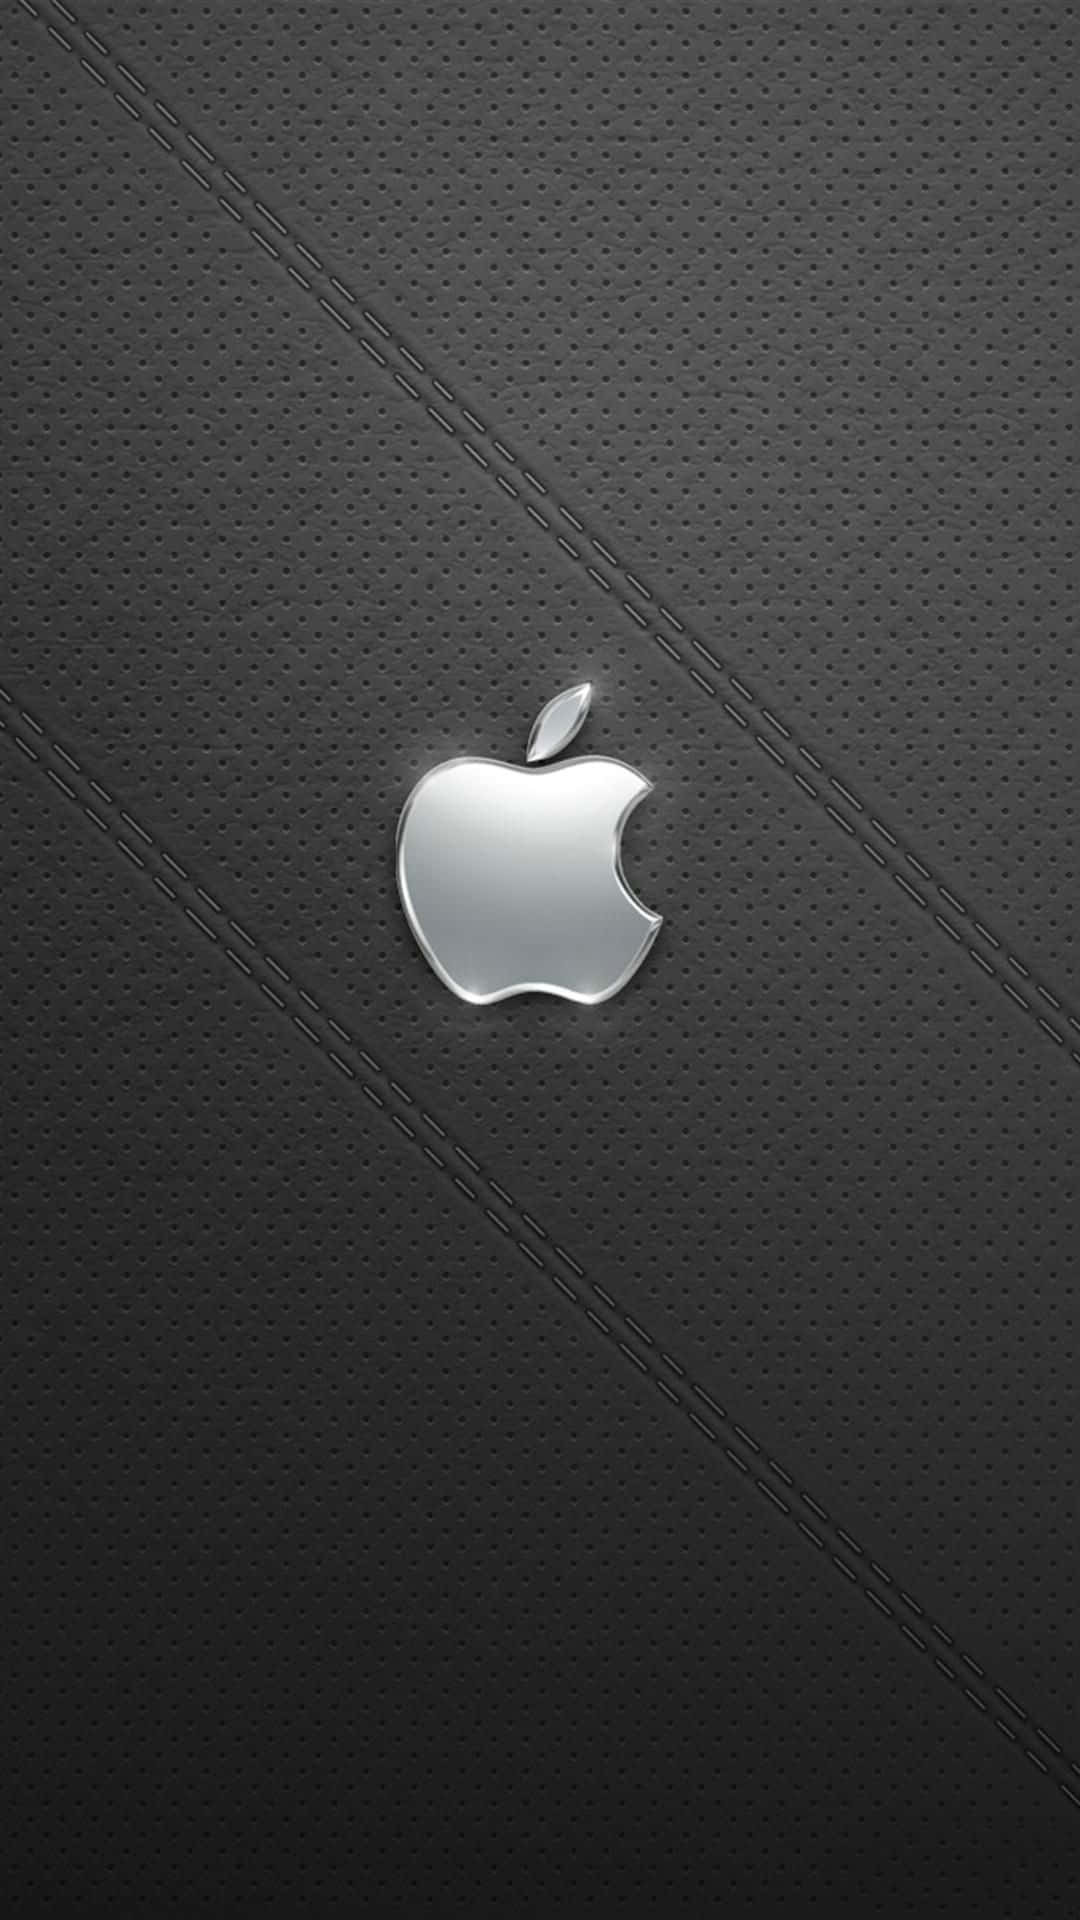 Amazing Iphone X Apple Background Design Background